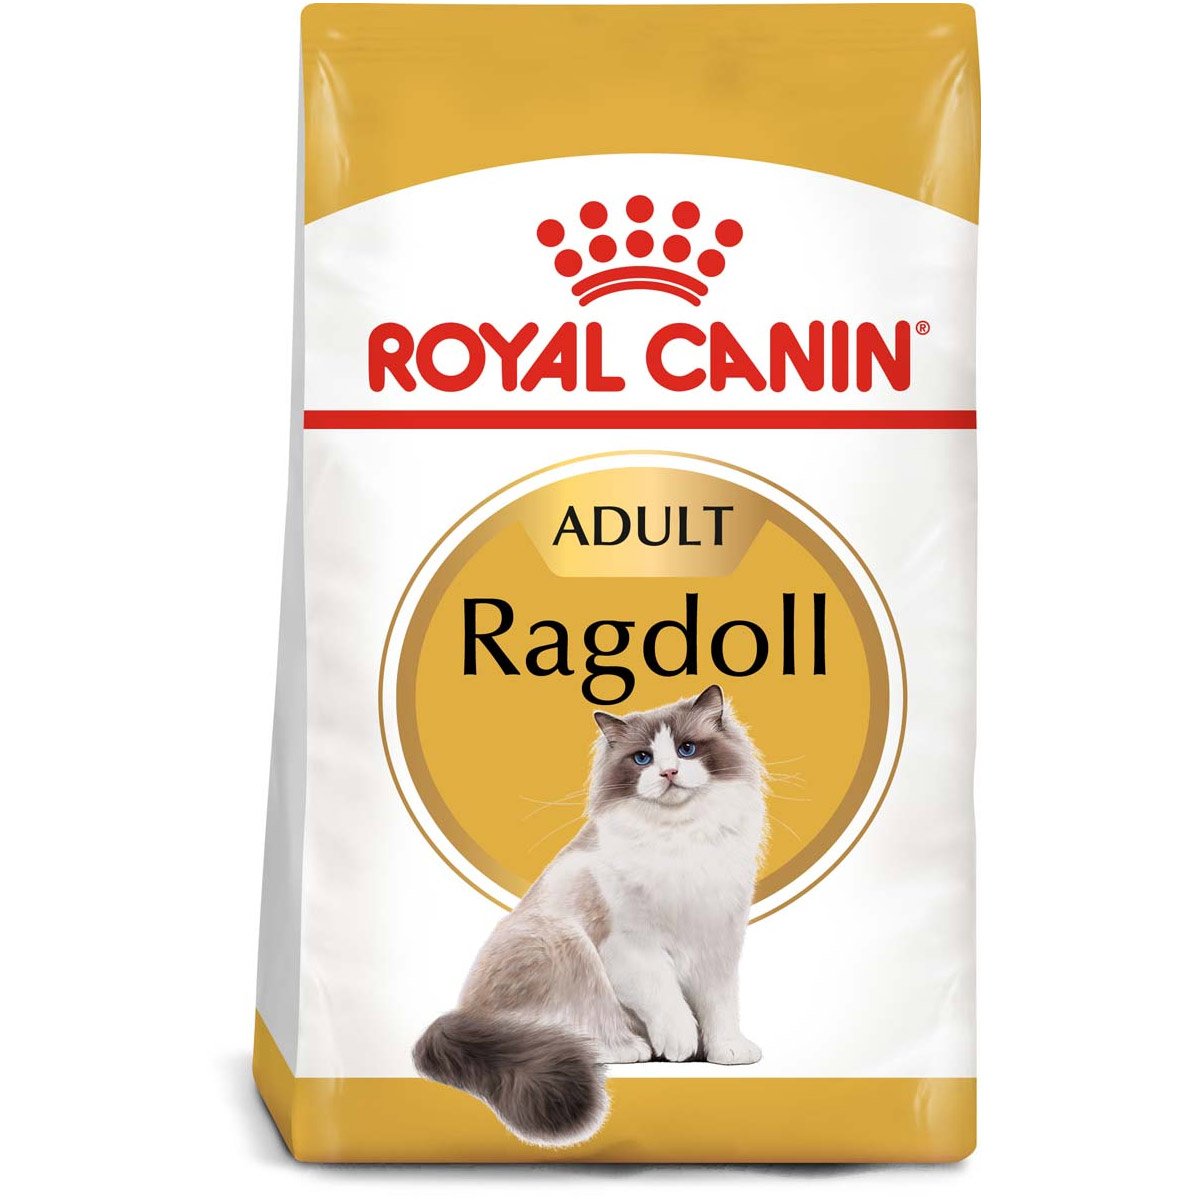 ROYAL CANIN Ragdoll Adult Katzenfutter trocken 2x10kg